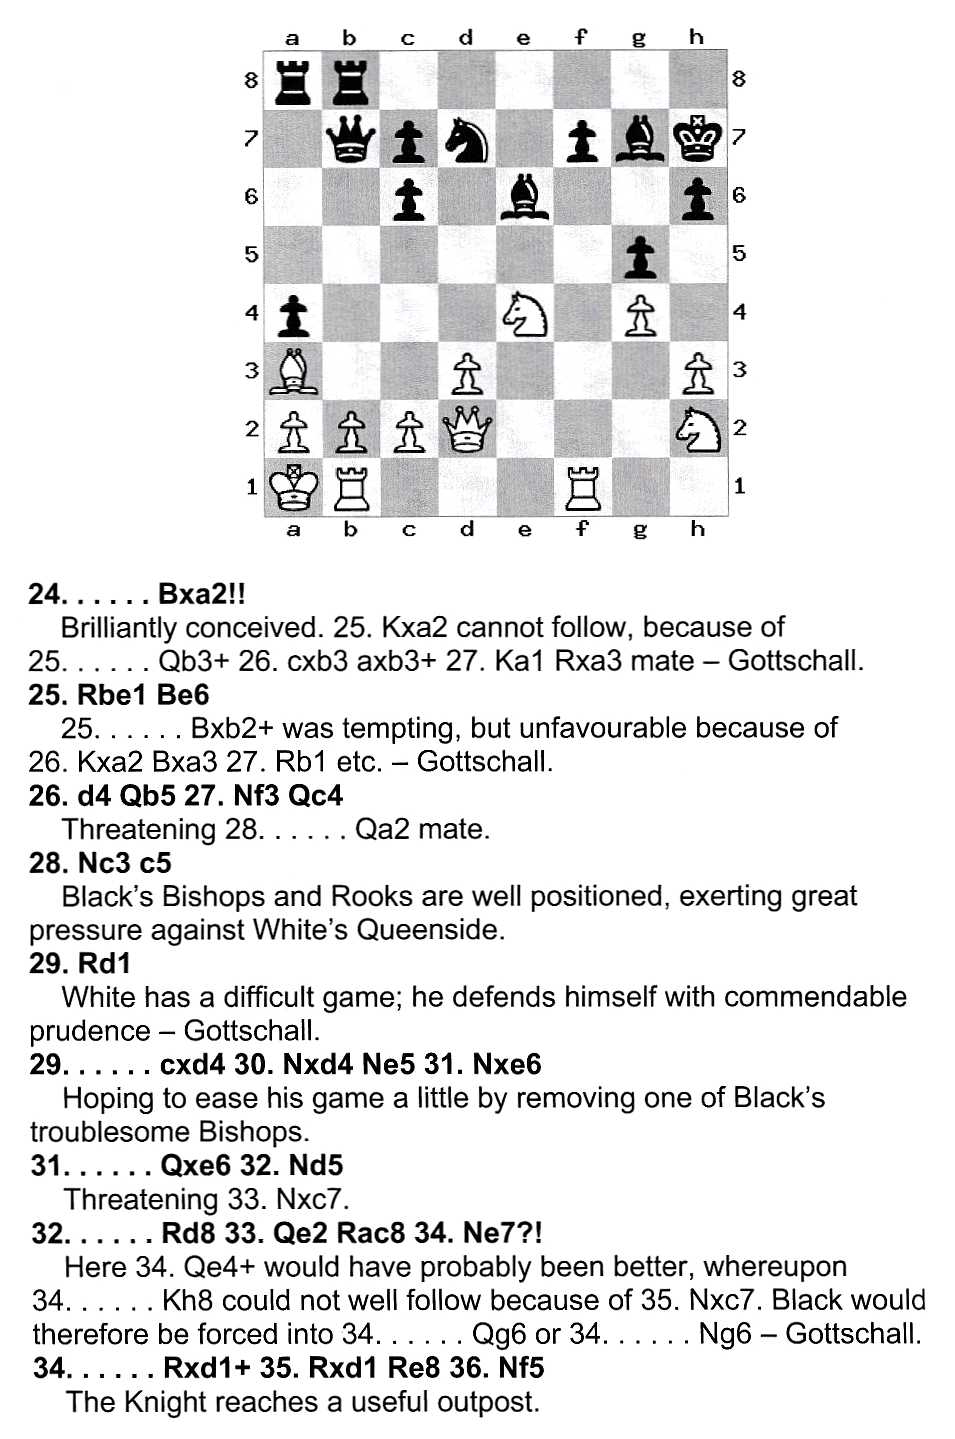 Adolf Anderssen - Combinative Chess Genius - Schach-Biographie Robert Johnson - Probeseite - Buch-Rezensionen Glarean Magazin